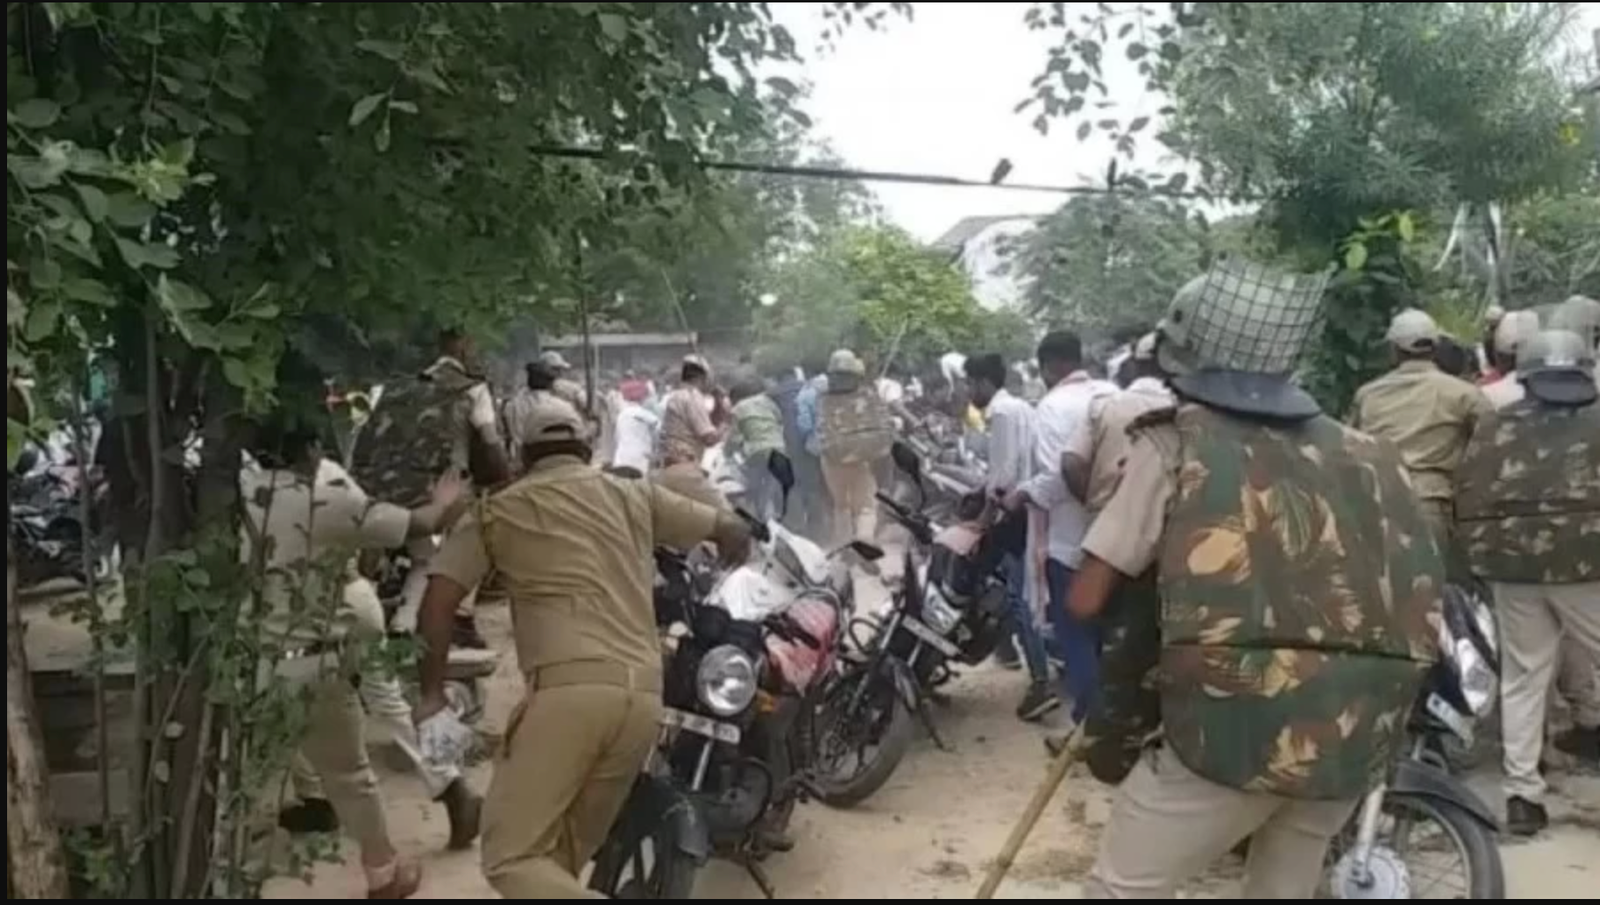 शाहपुरा में हुआ राज्य मंत्री का समारोह विवादित: पुलिस ने प्रदर्शनकारियों को किया लाठीचार्ज